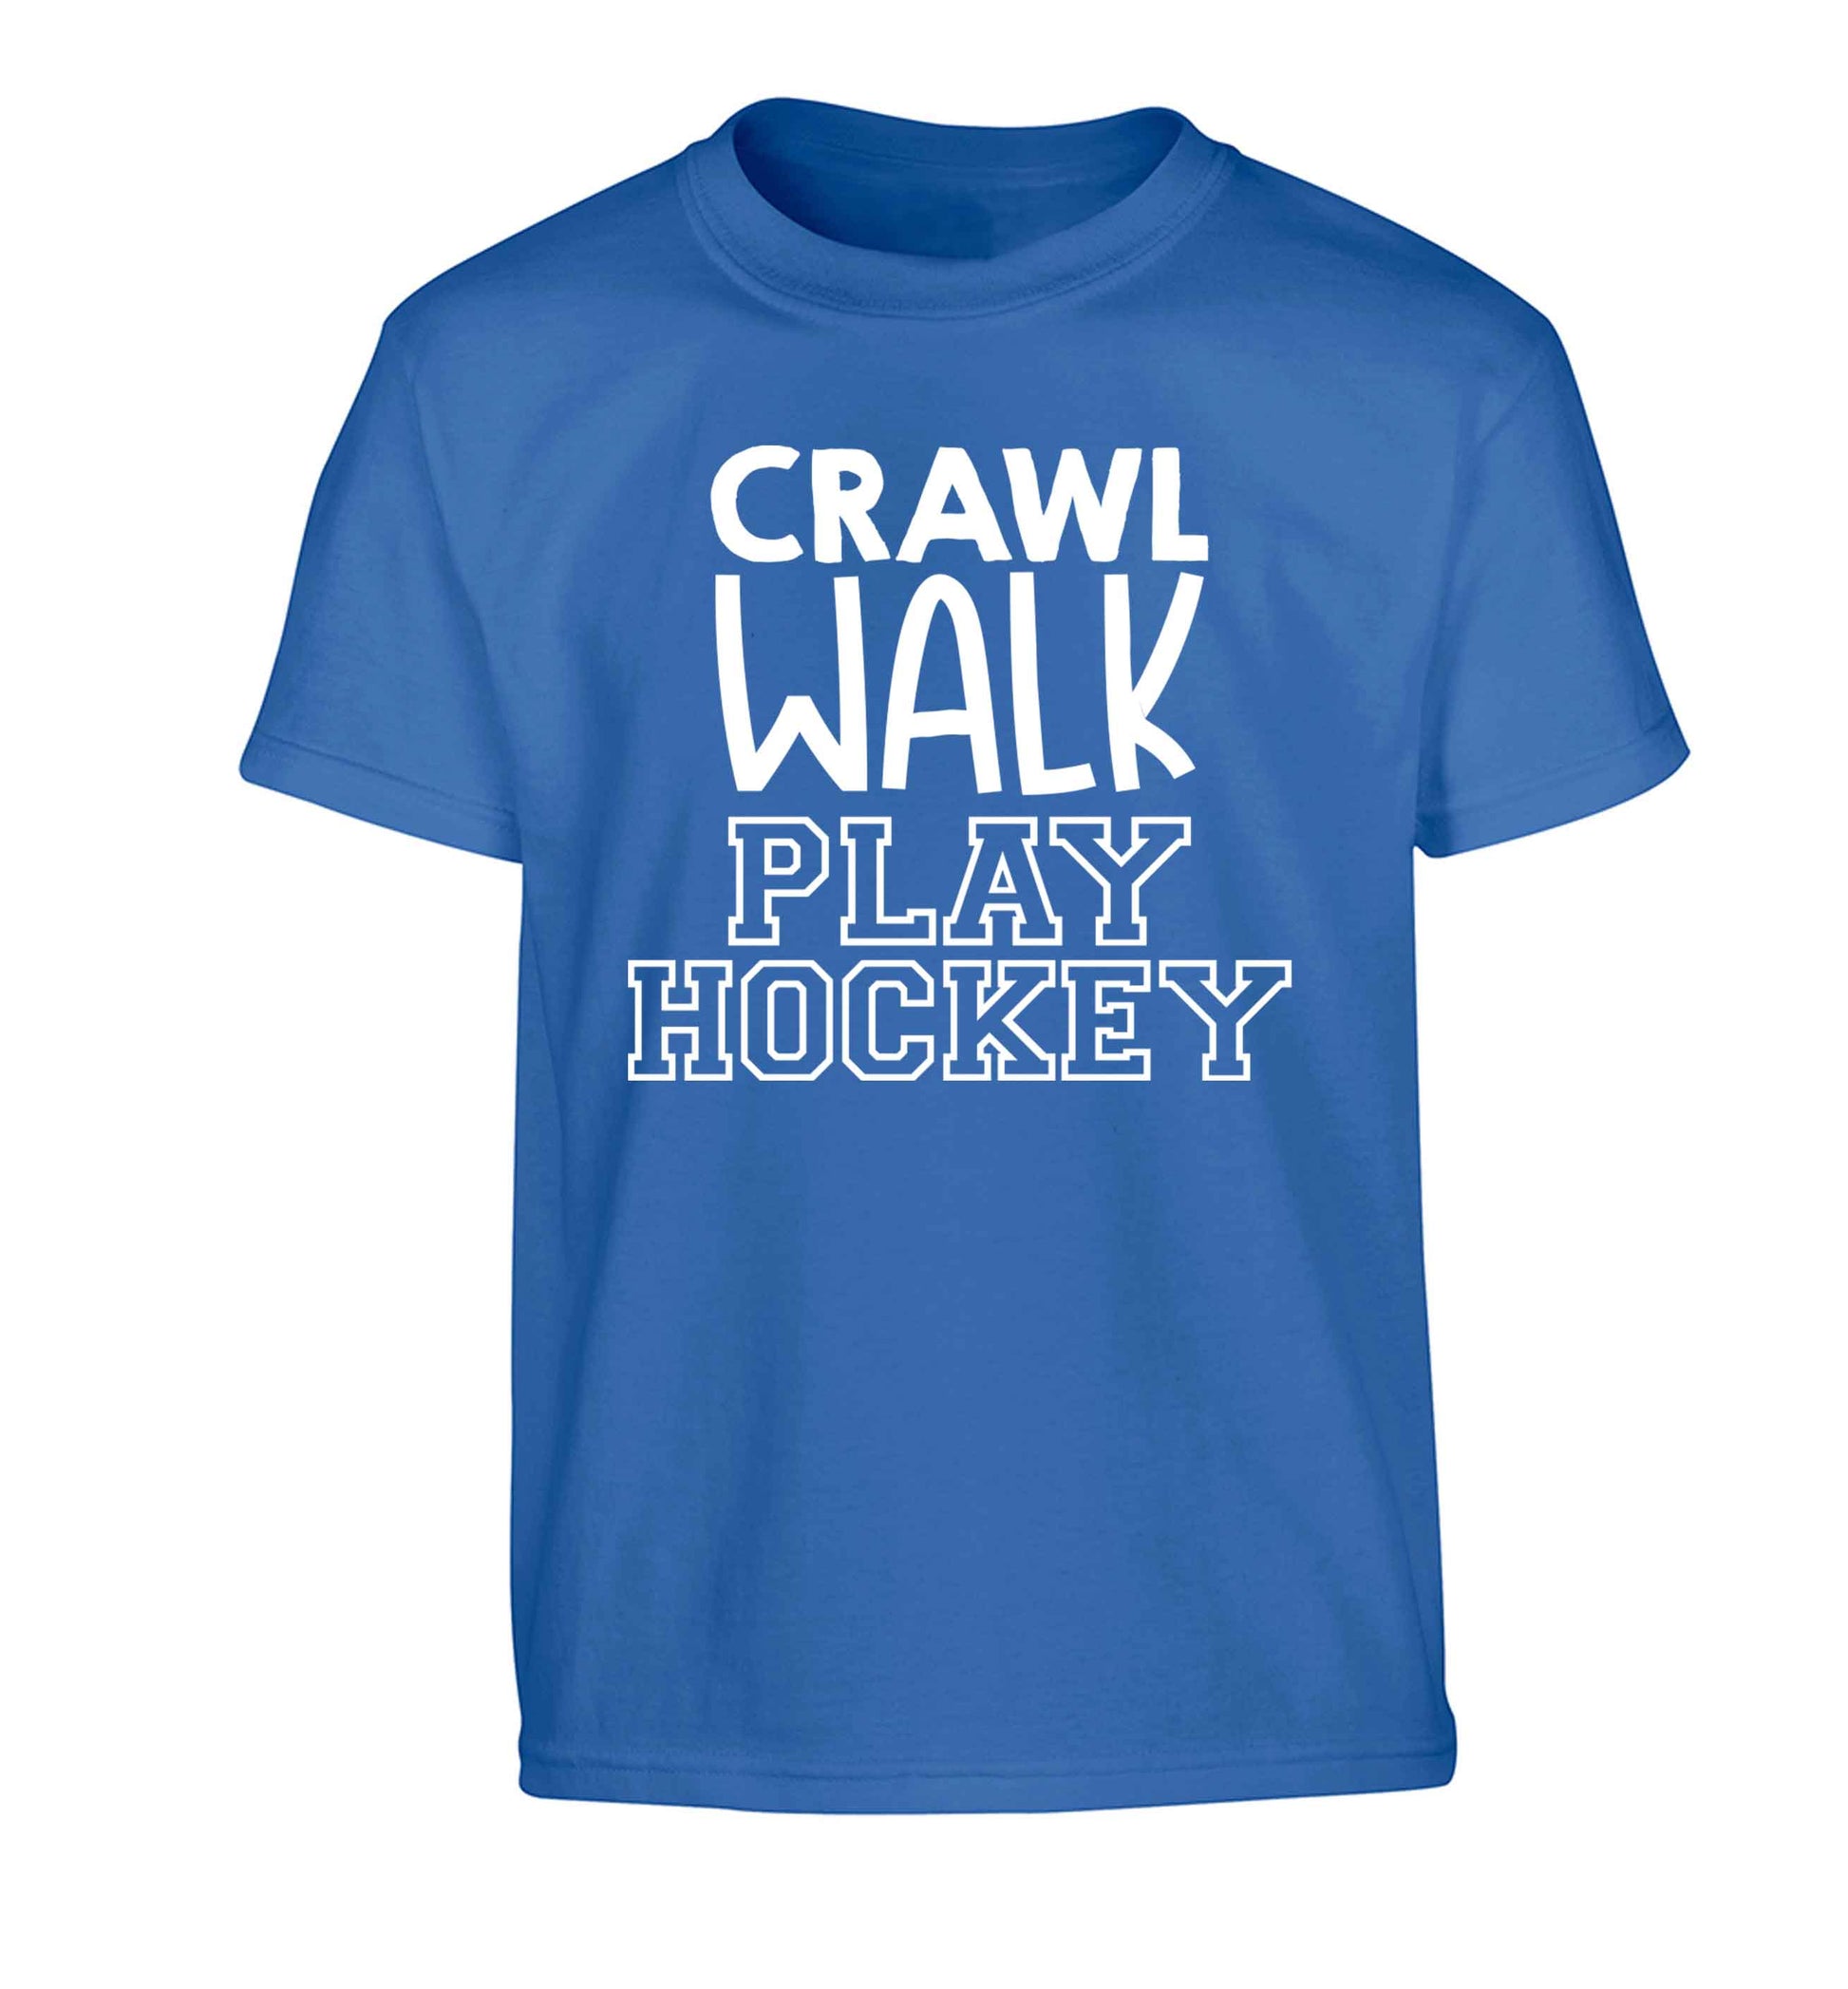 Crawl walk play hockey Children's blue Tshirt 12-13 Years